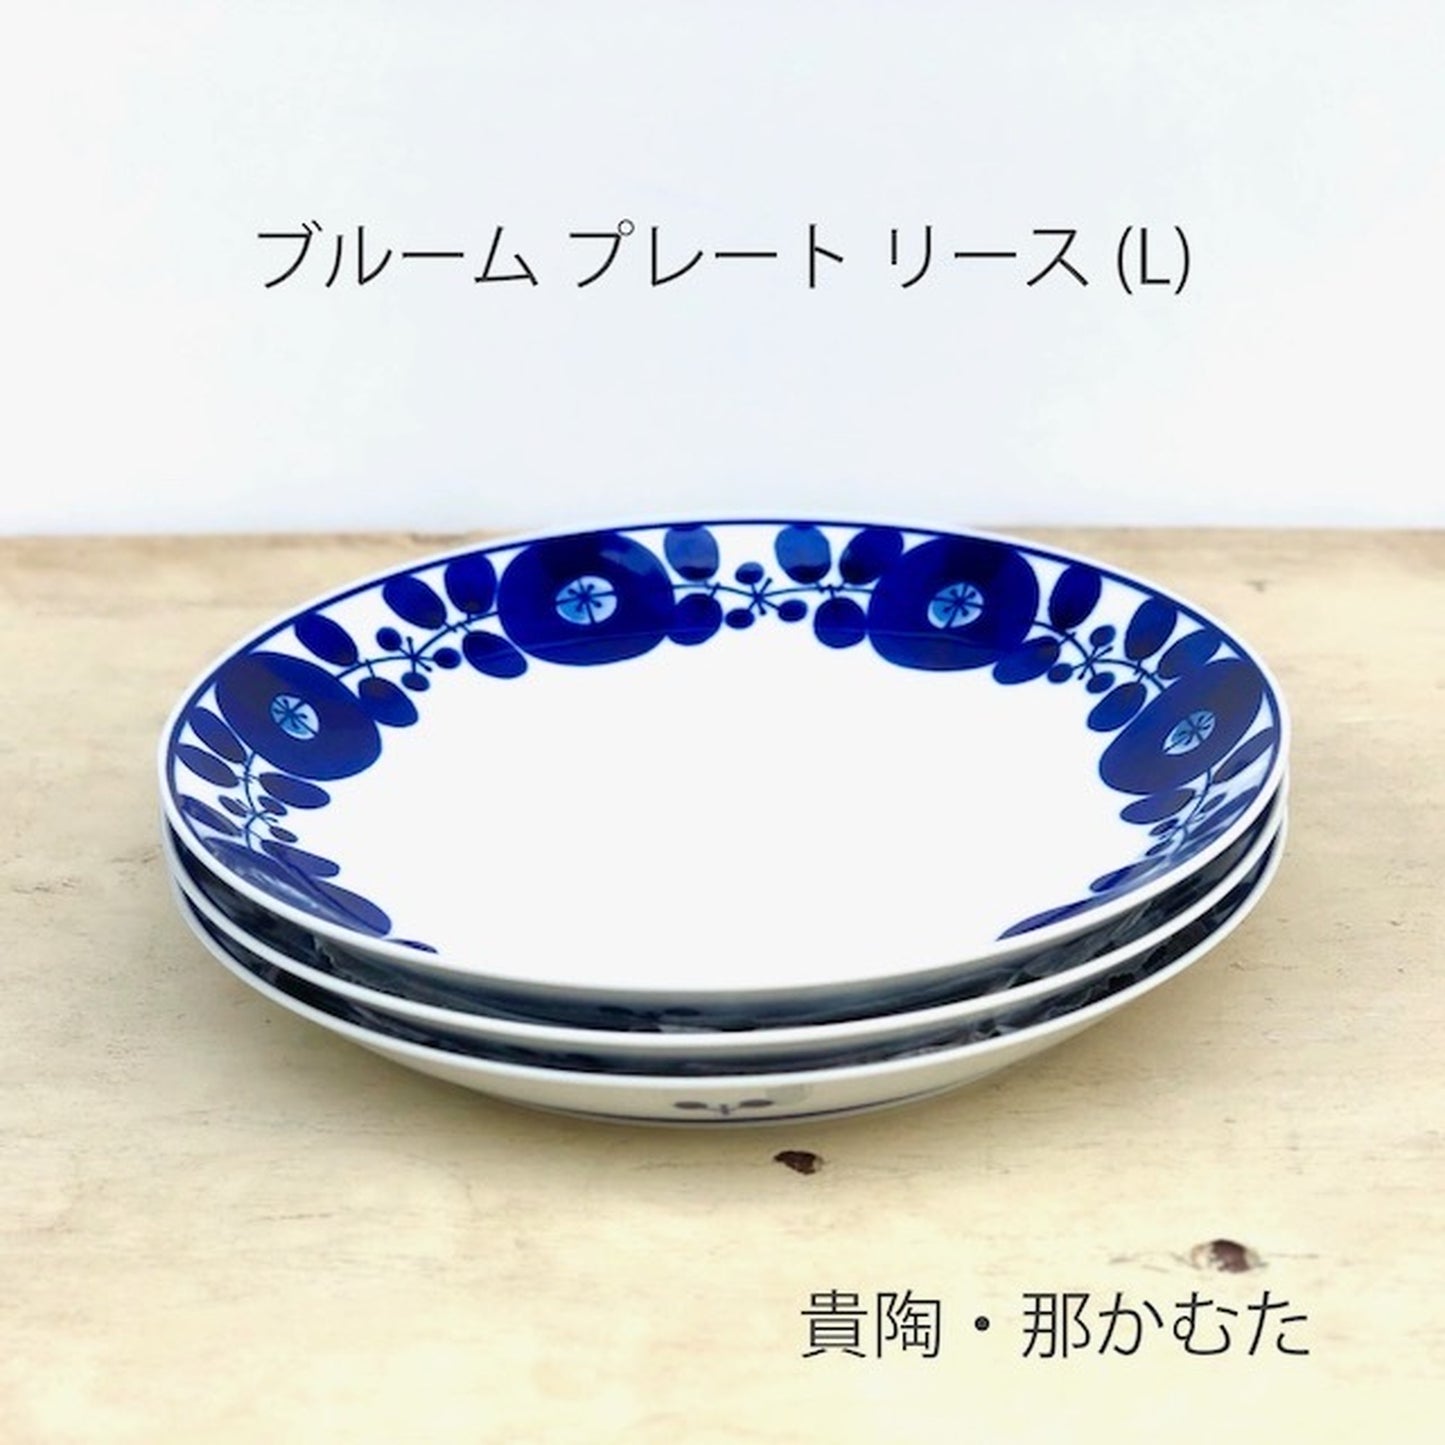 [Hasami ware] [Hakusan pottery] [Bloom] [Plate] [Wreath] [L] [单独出售] 斯堪的纳维亚风格餐具意大利面盘咖喱盘拼盘时尚可爱